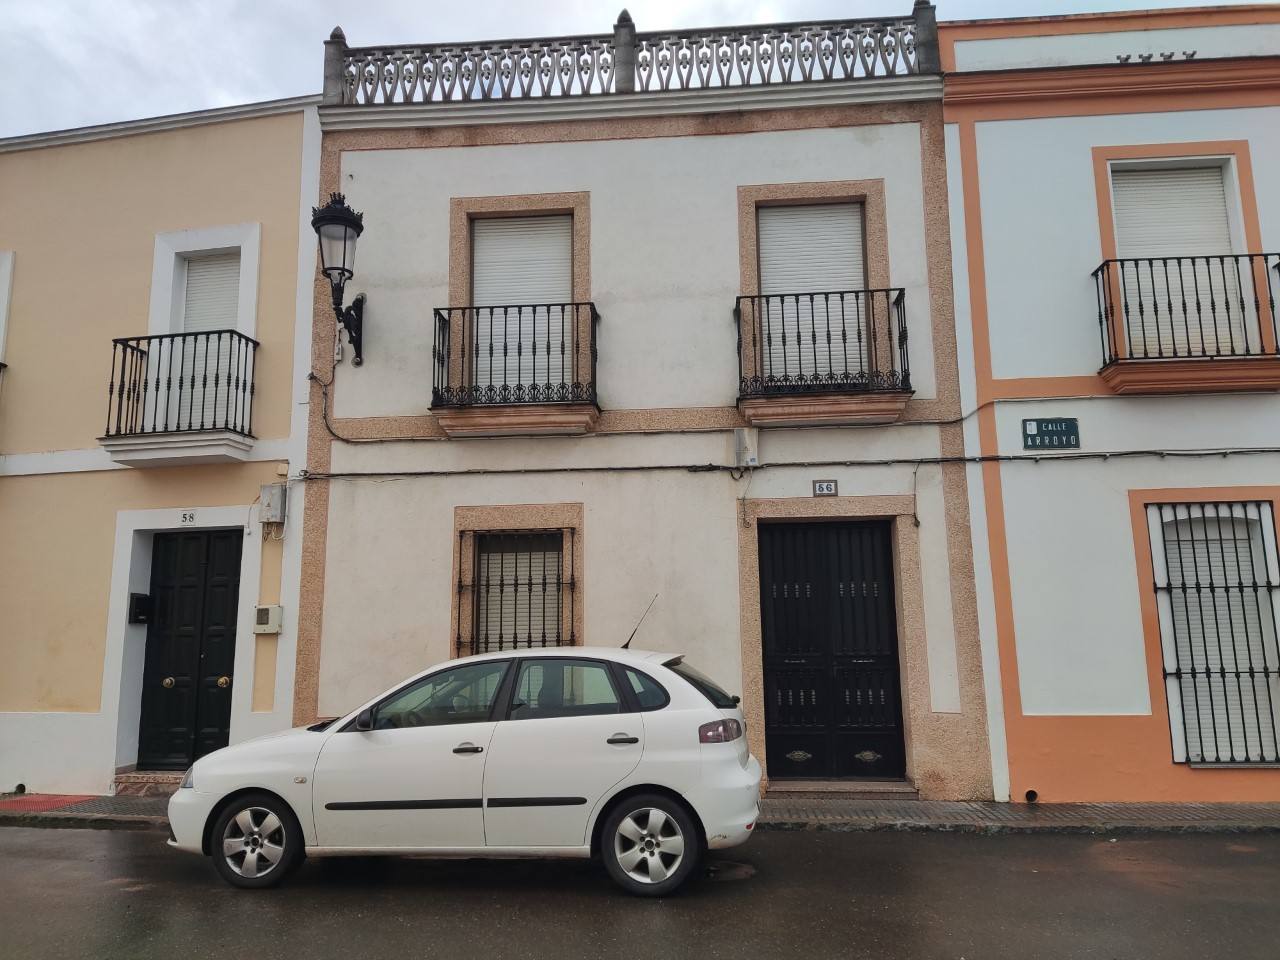 Casa de la calle Arroyo, número 56, adquirida por el Ayuntamiento para acceso con la calle Hernán Cortés./PF